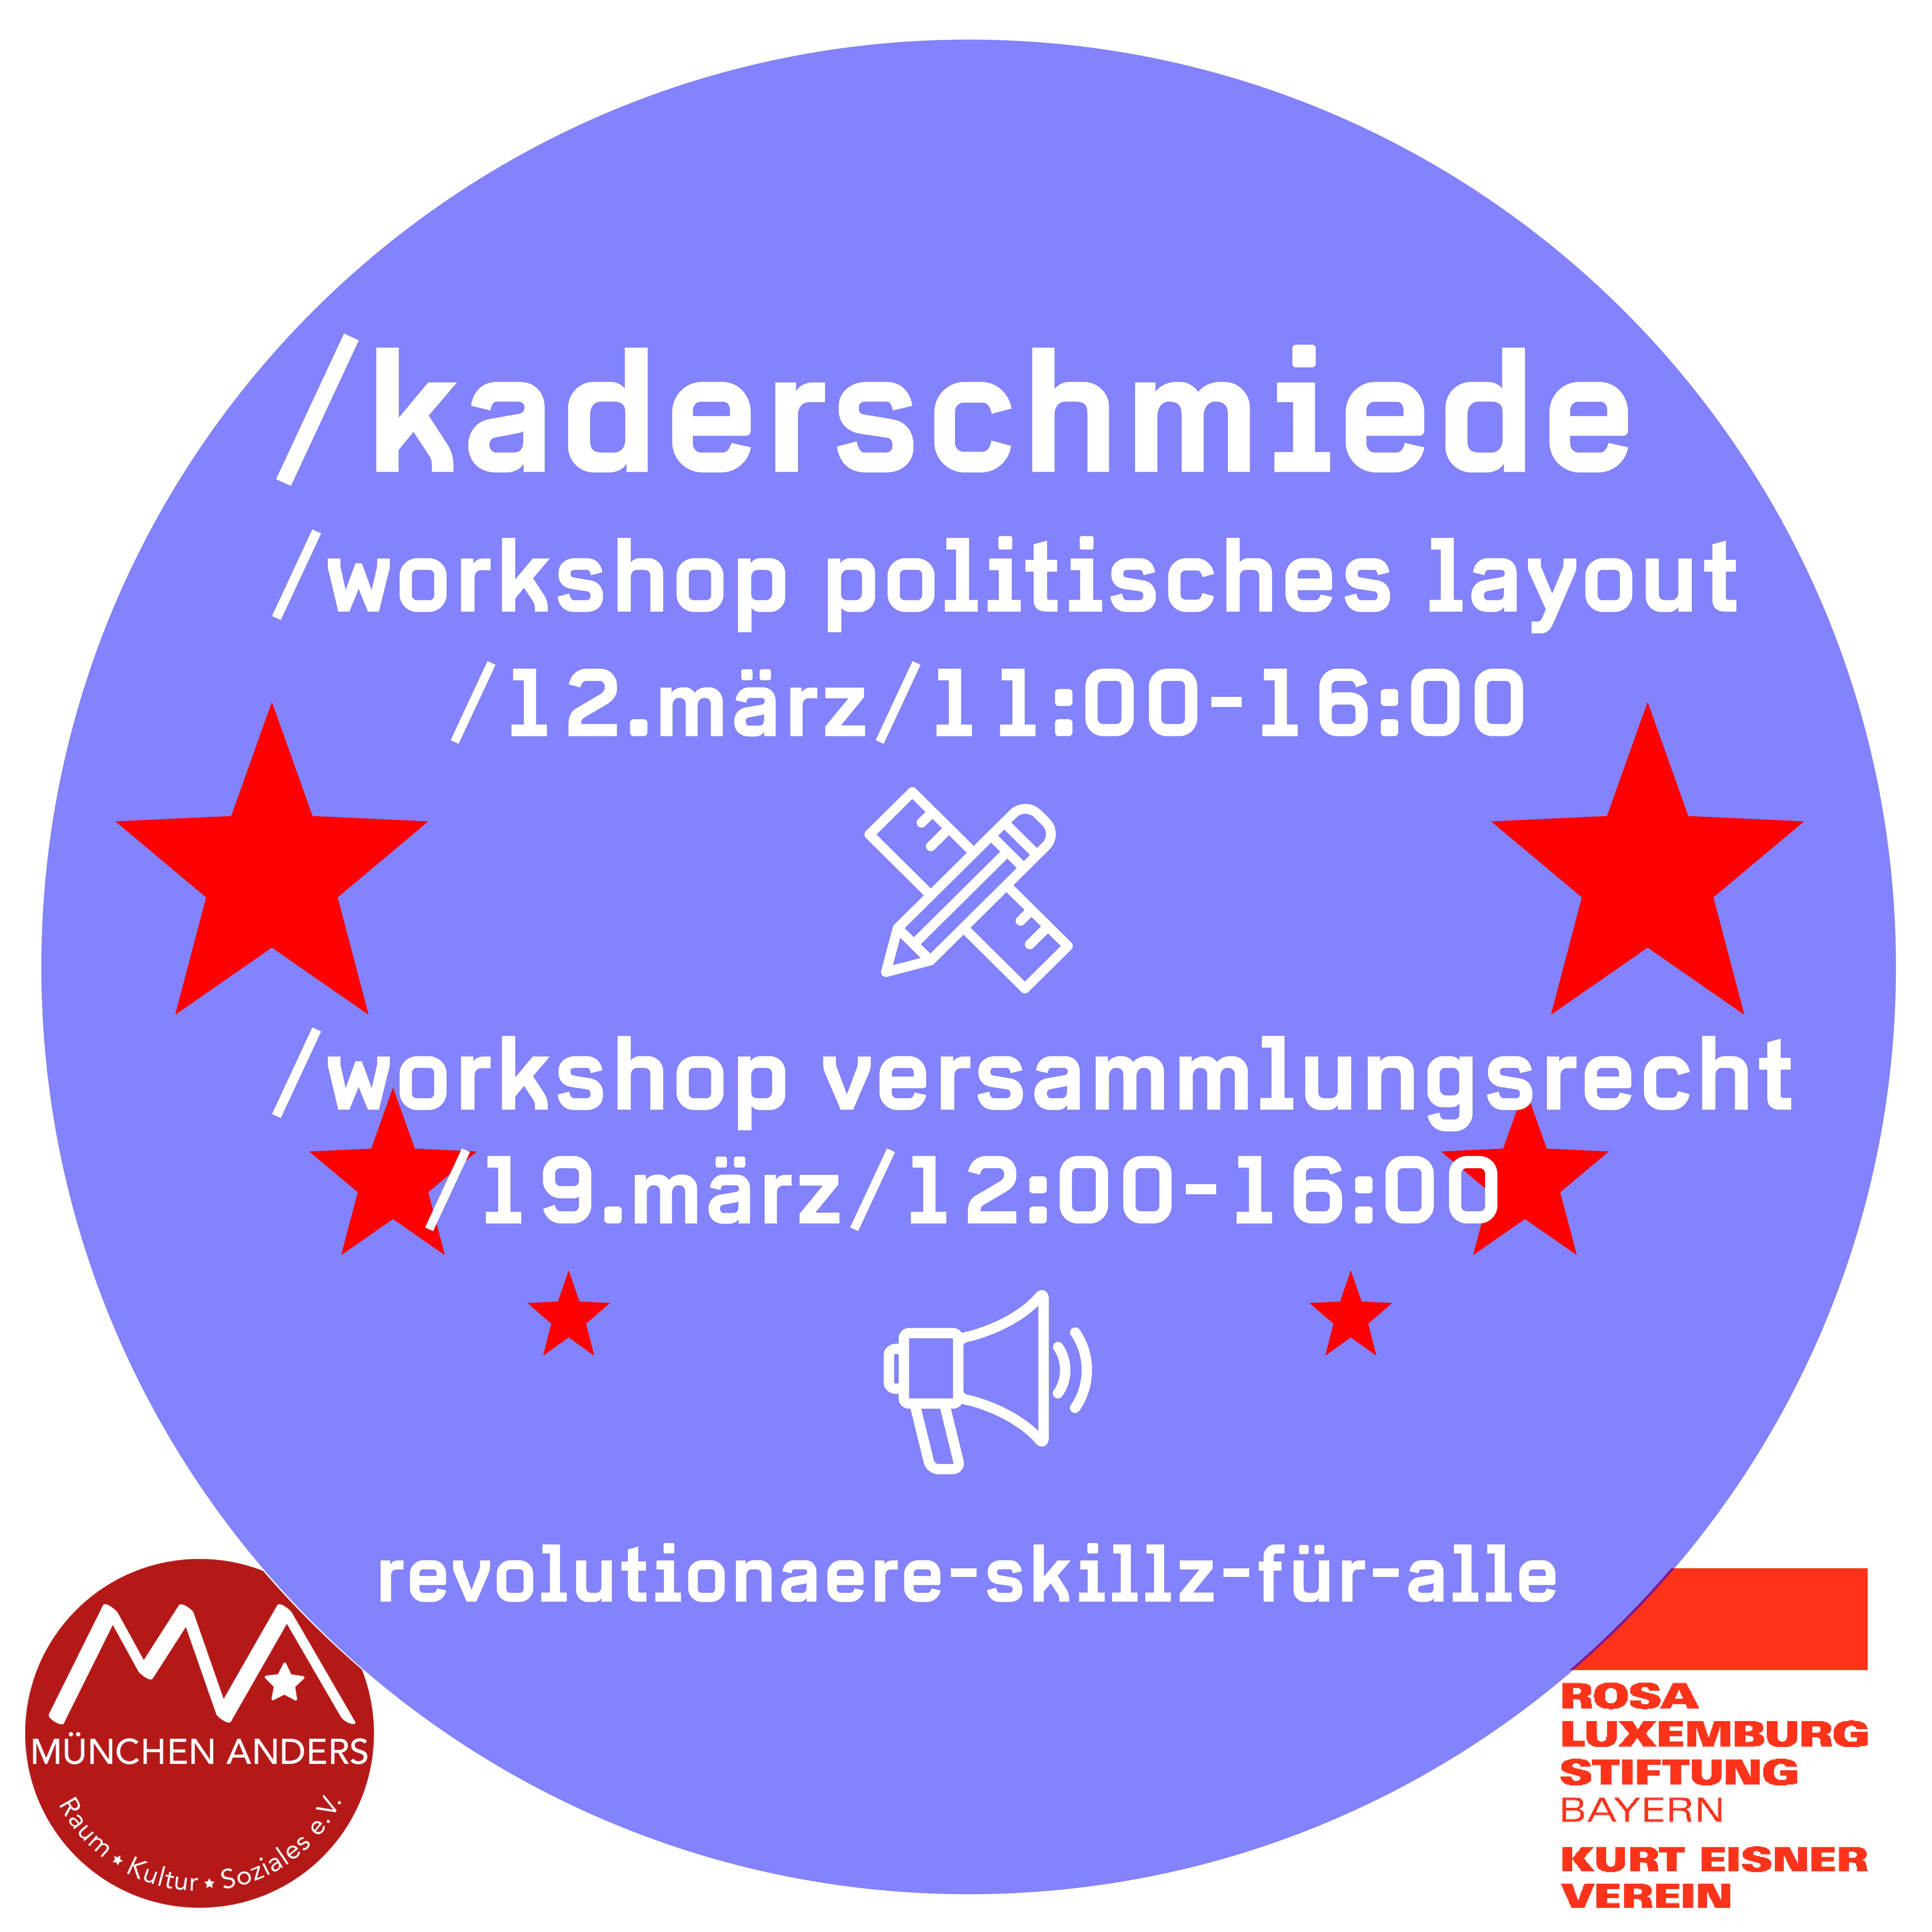 Projekt Kaderschmiede: Workshop politisches Layout